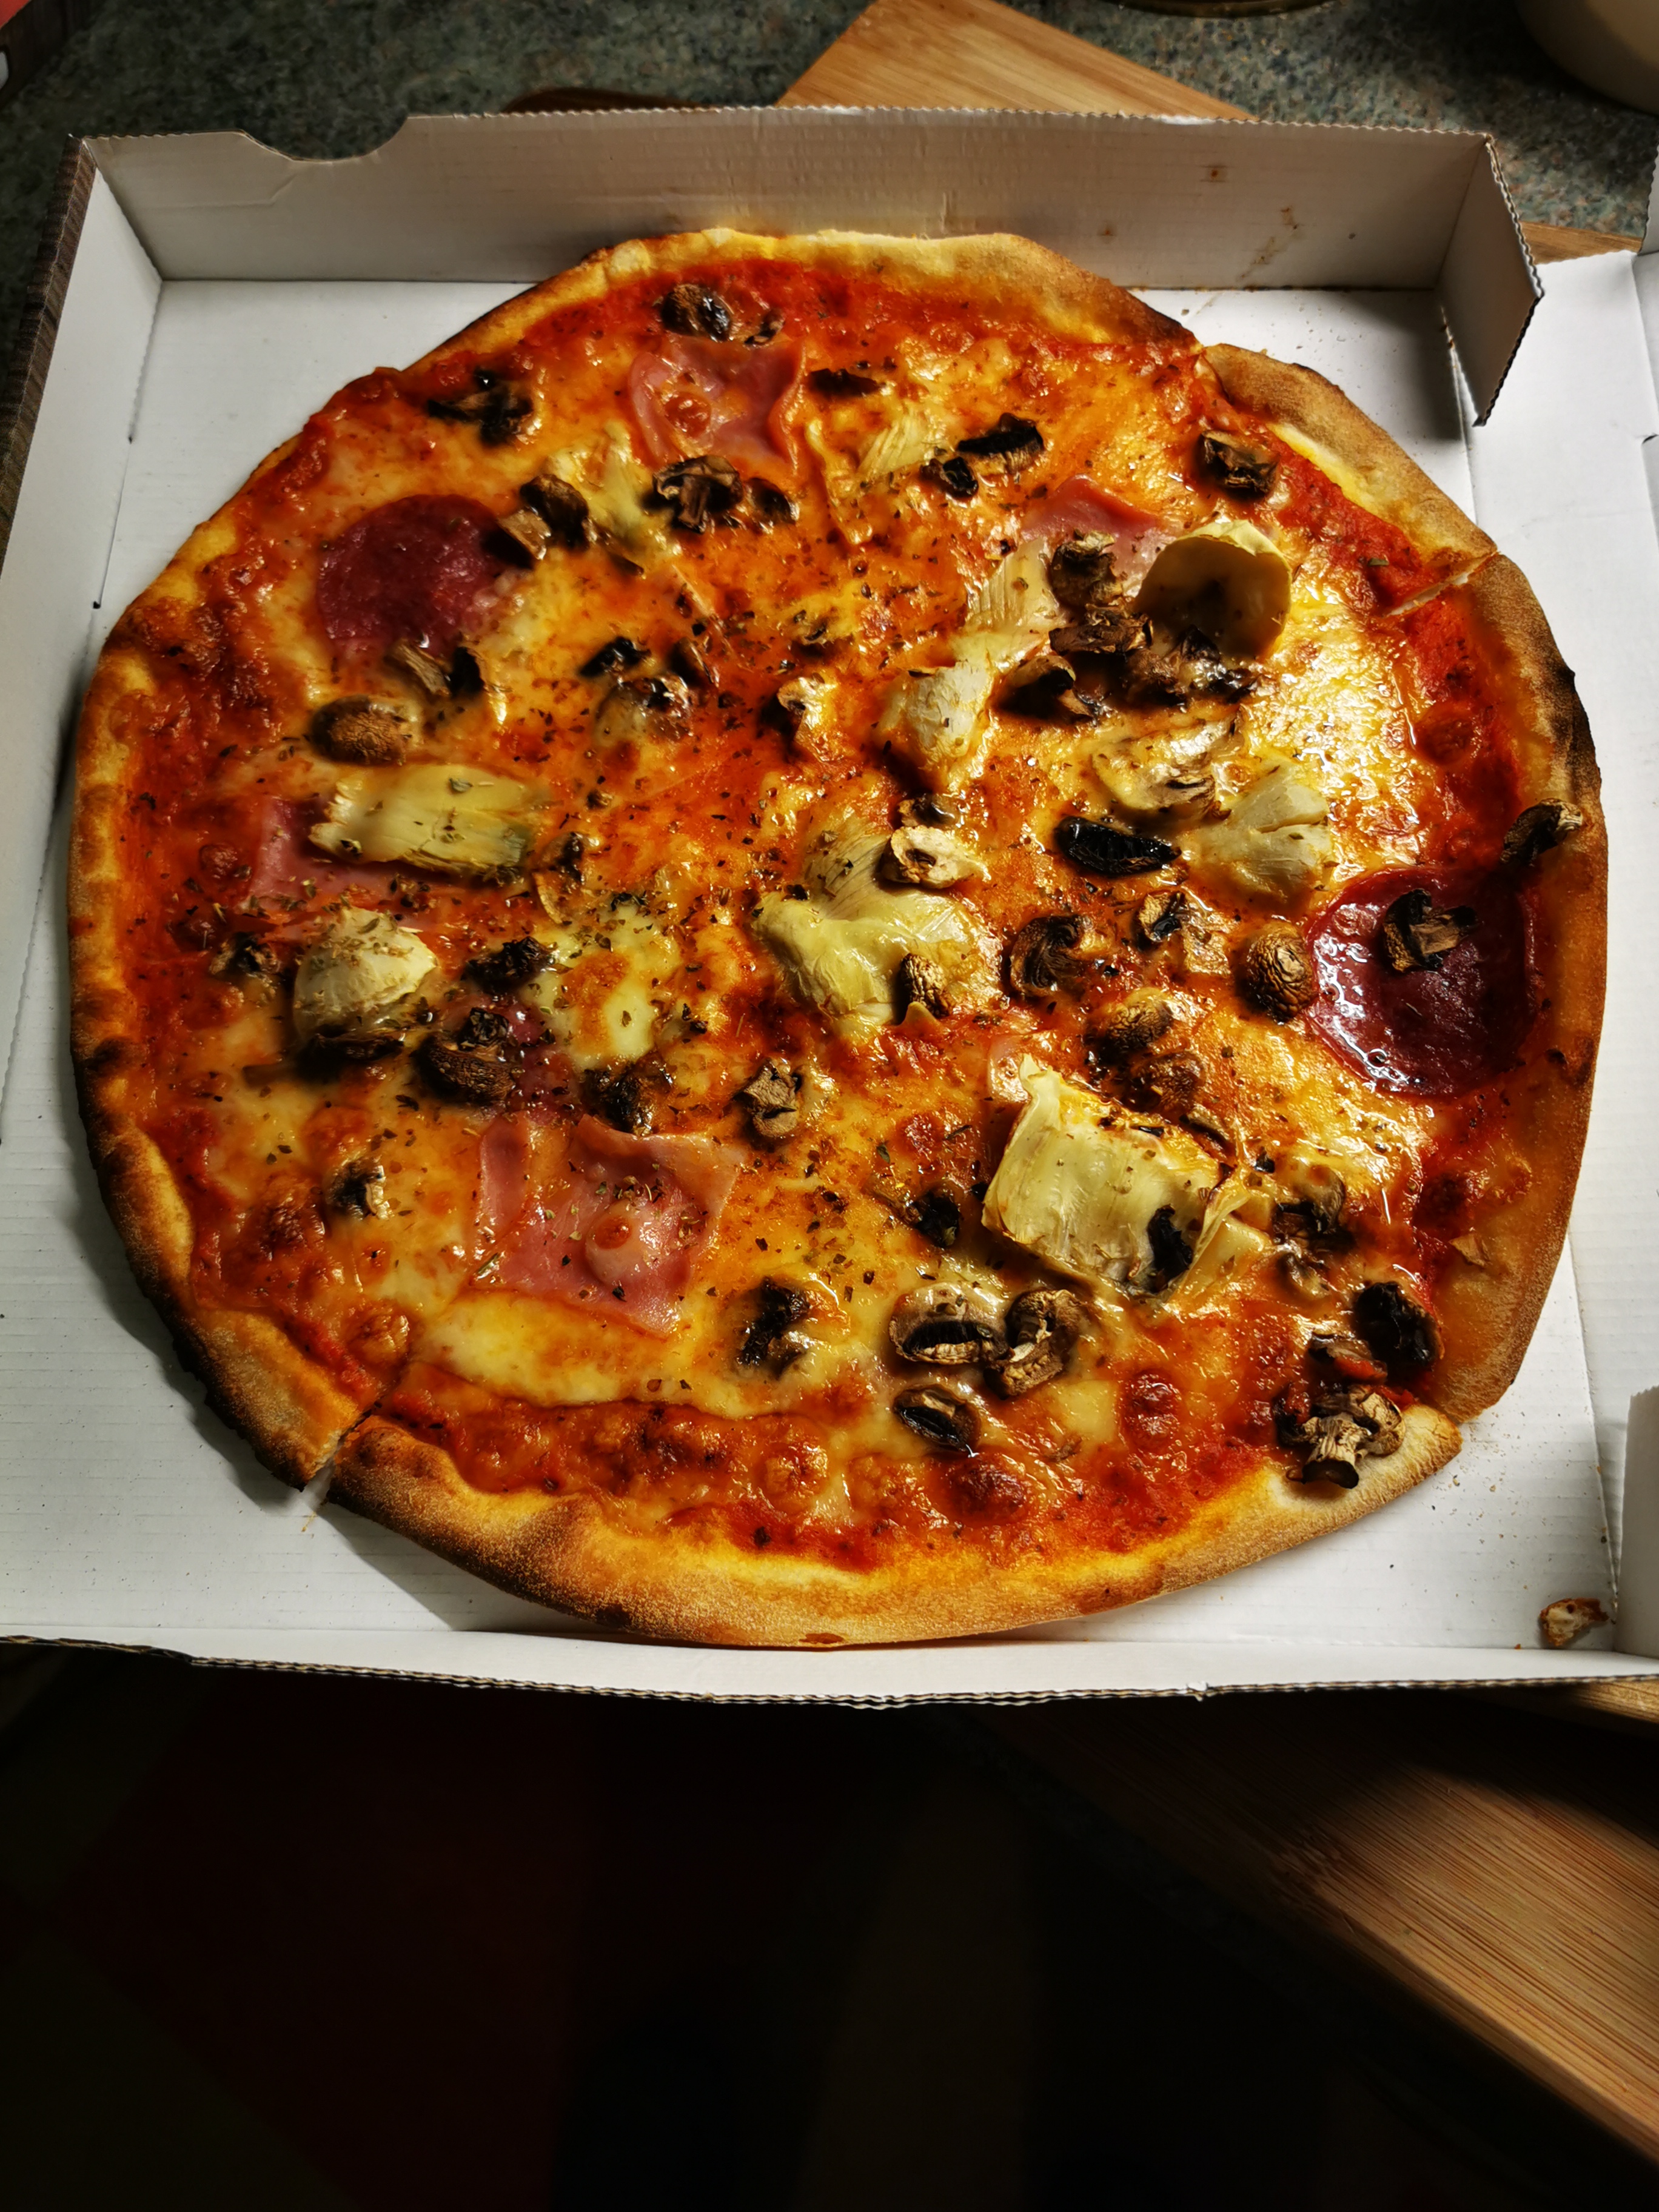 Pizza Quattro stagnioni mit Tomatensauce, Käse, Artischocken, Champignons, Salami und Vorderschinken - Pizzeria La Terrazza Amelinghausen. Via Abholservice am 08.02.2021 ... (Foto privat)